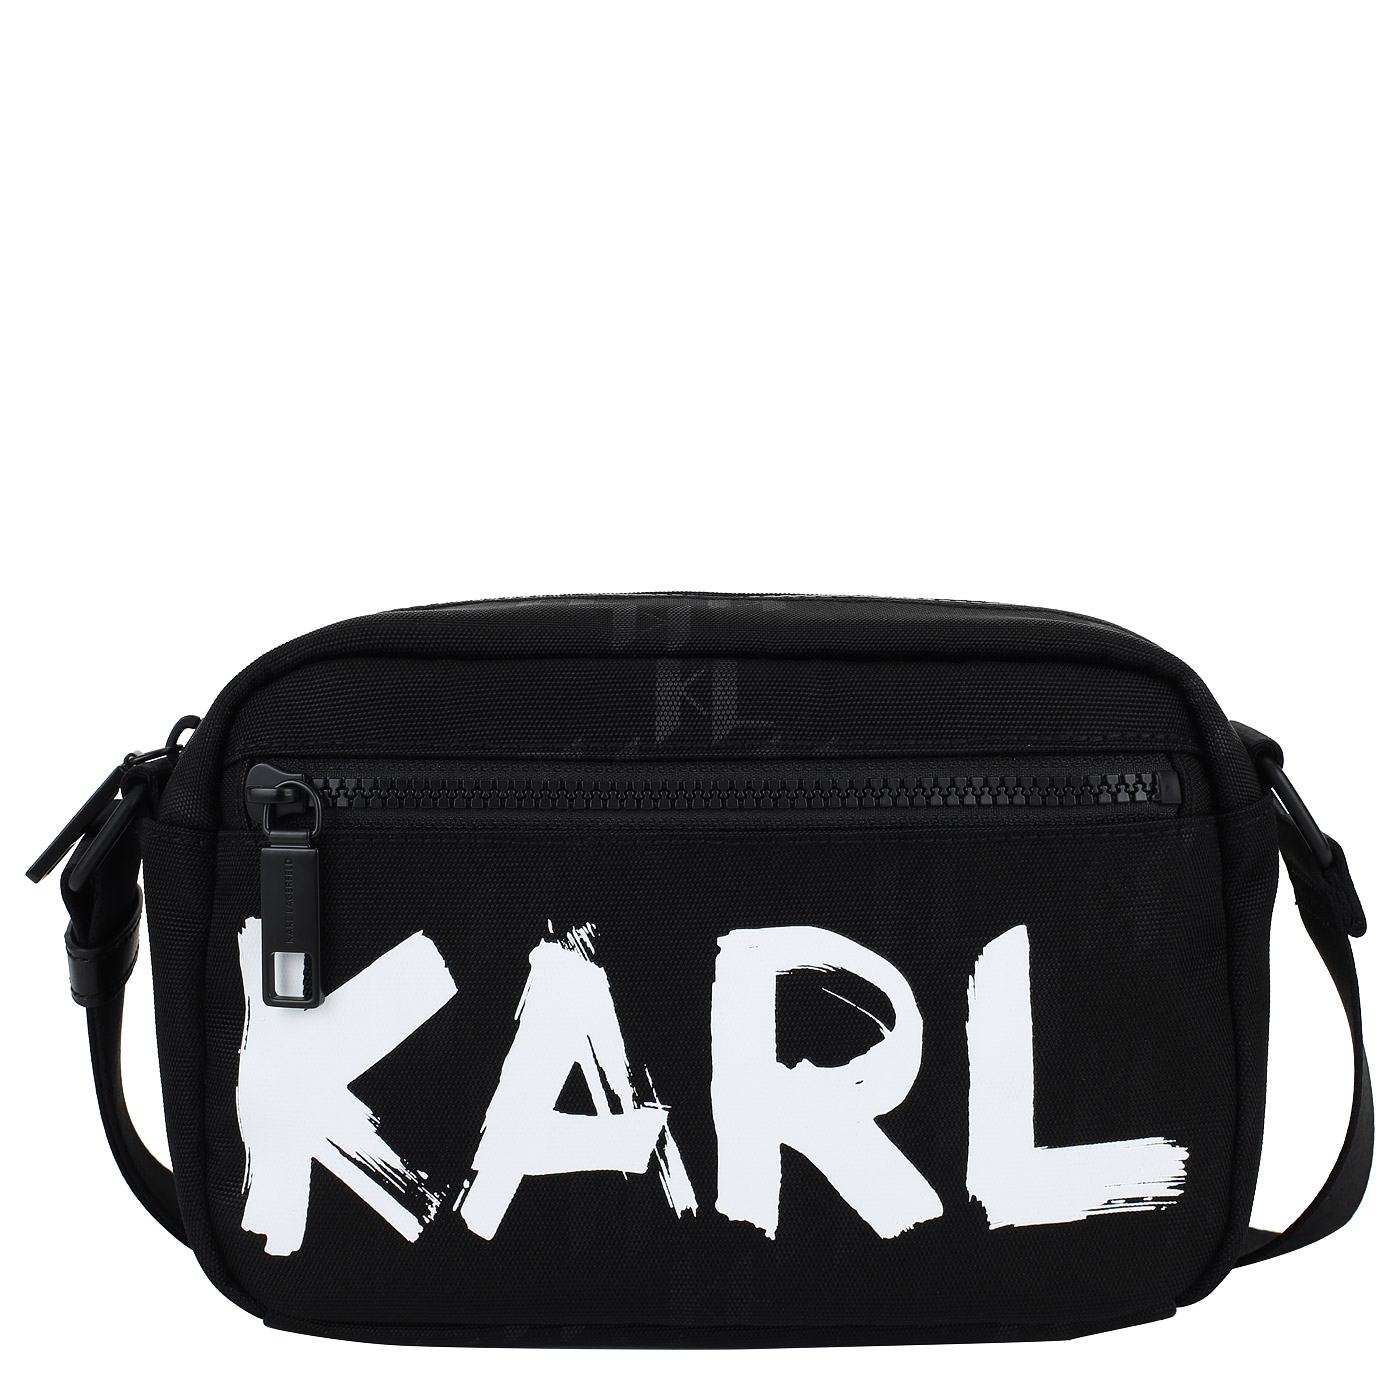 Karl Lagerfeld Сумка через плечо